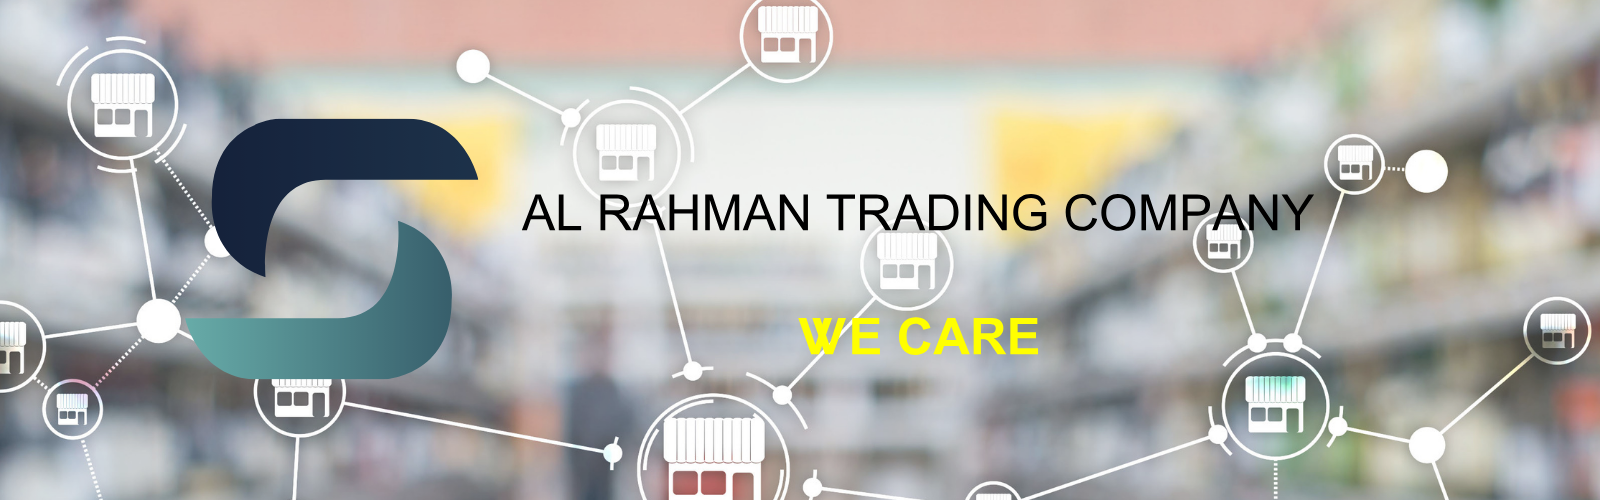 Al Rahman Trading